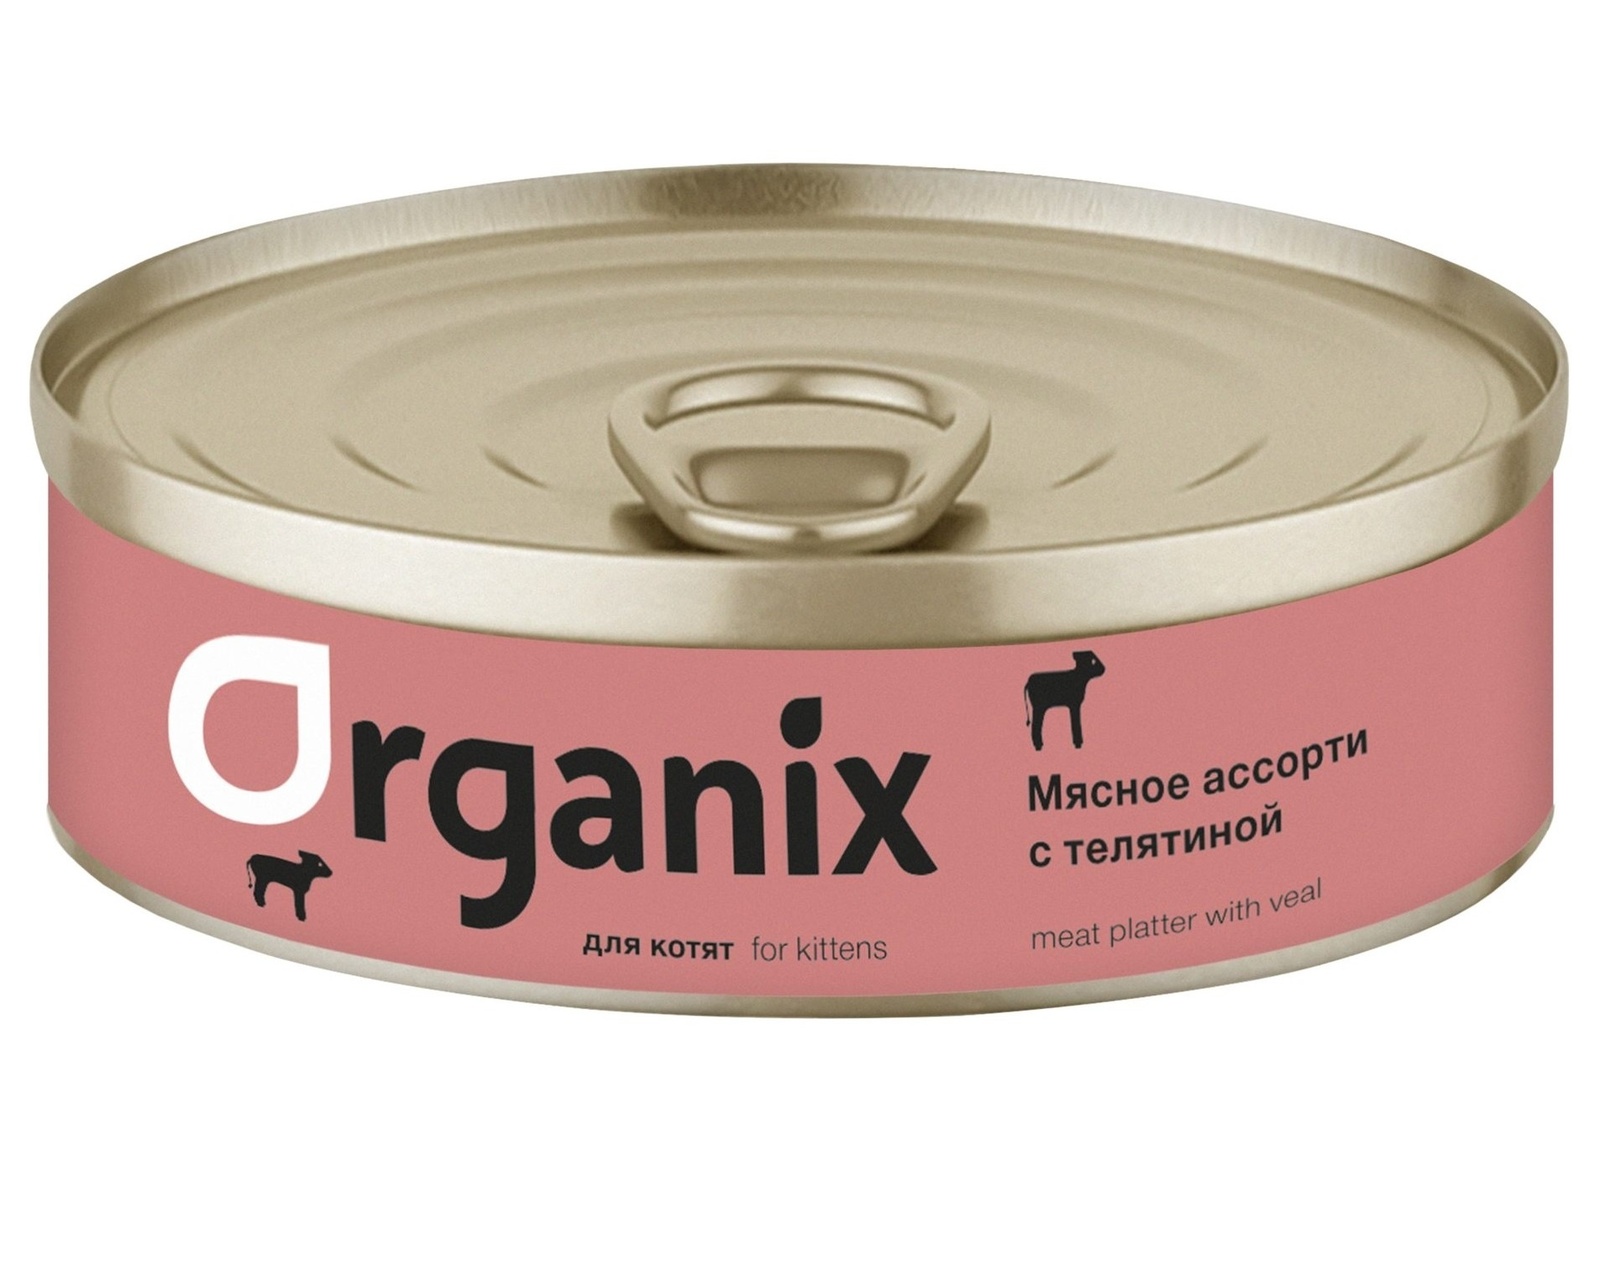 Organix консервы Organix консервы для котят Мясное ассорти с телятиной (100 г) organix консервы organix консервы для щенков мясное ассорти с кроликом 100 г